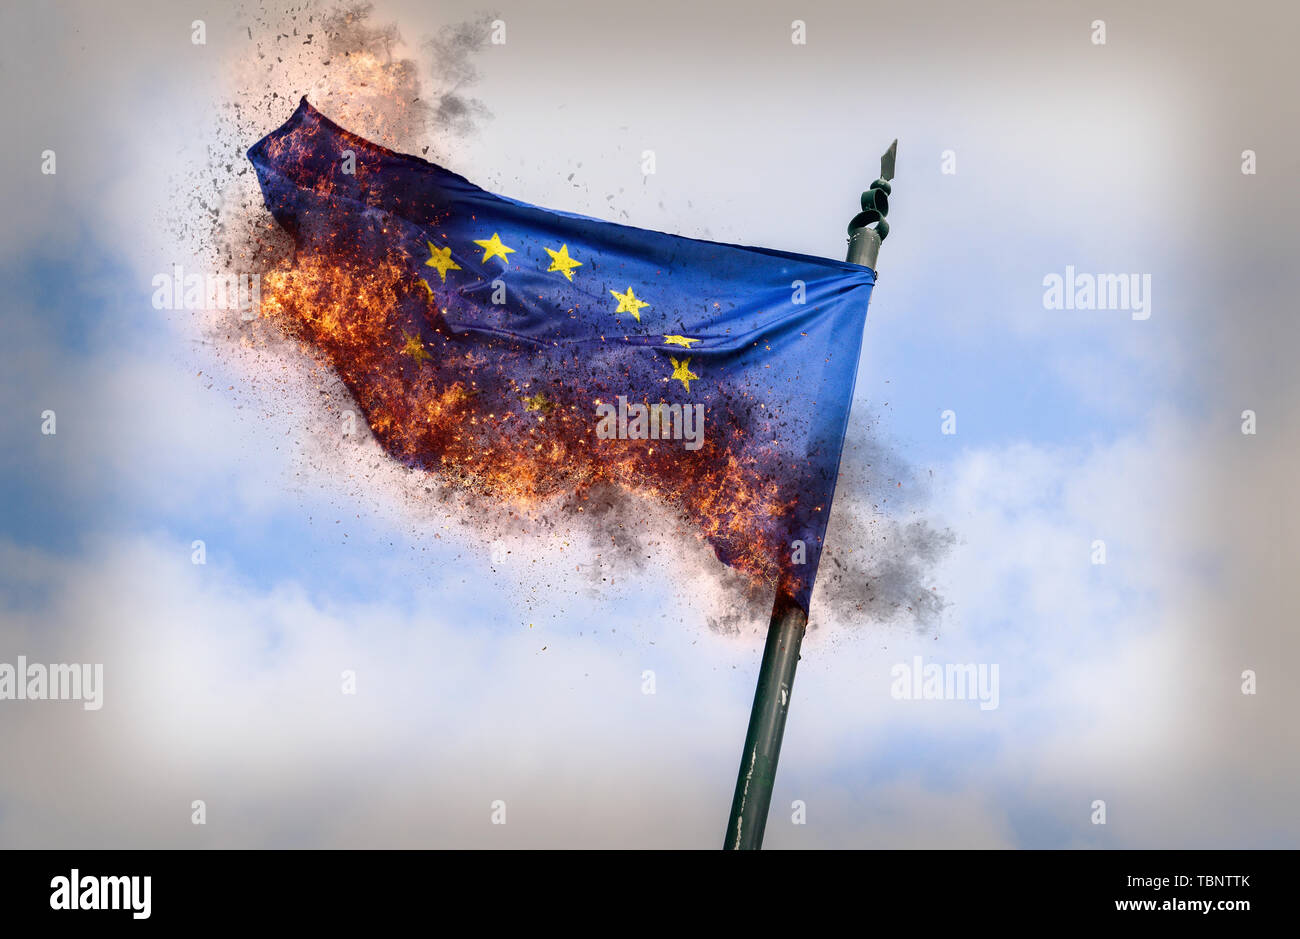 Flagge der Europäischen Union brennen mit Asche - konzeptionelle für das Auseinanderbrechen der Handelsblock und Euroskeptizismus und Populismus - digitale Manipulation Stockfoto